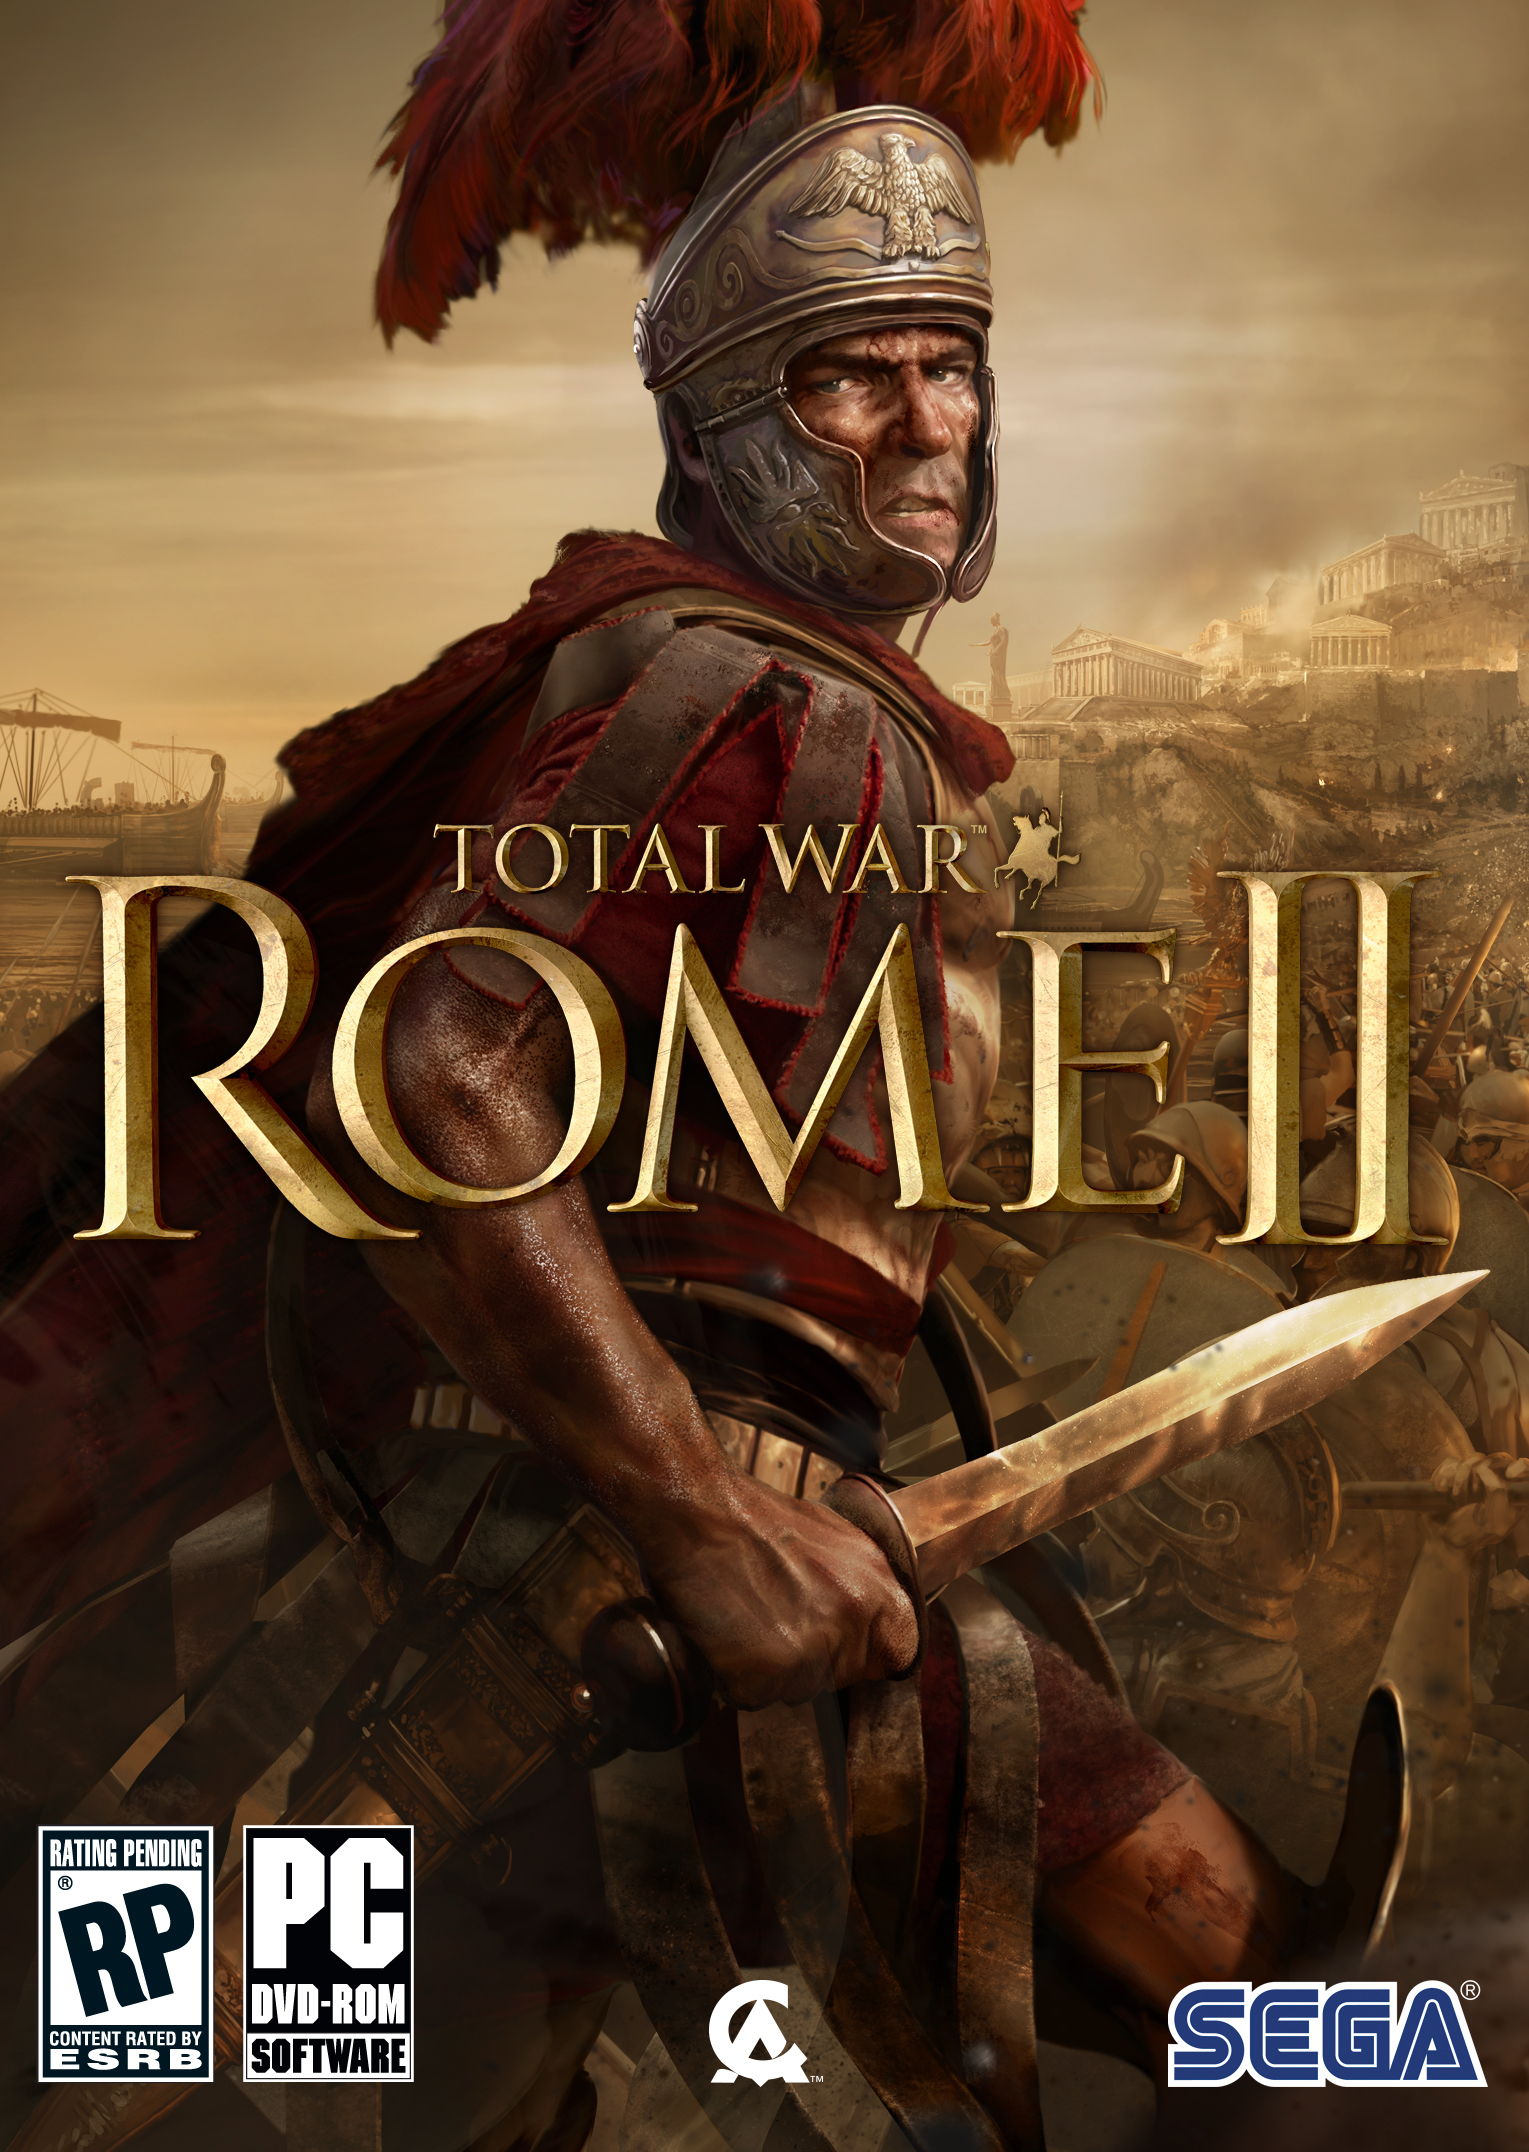 total war rome 2 keeps crashing